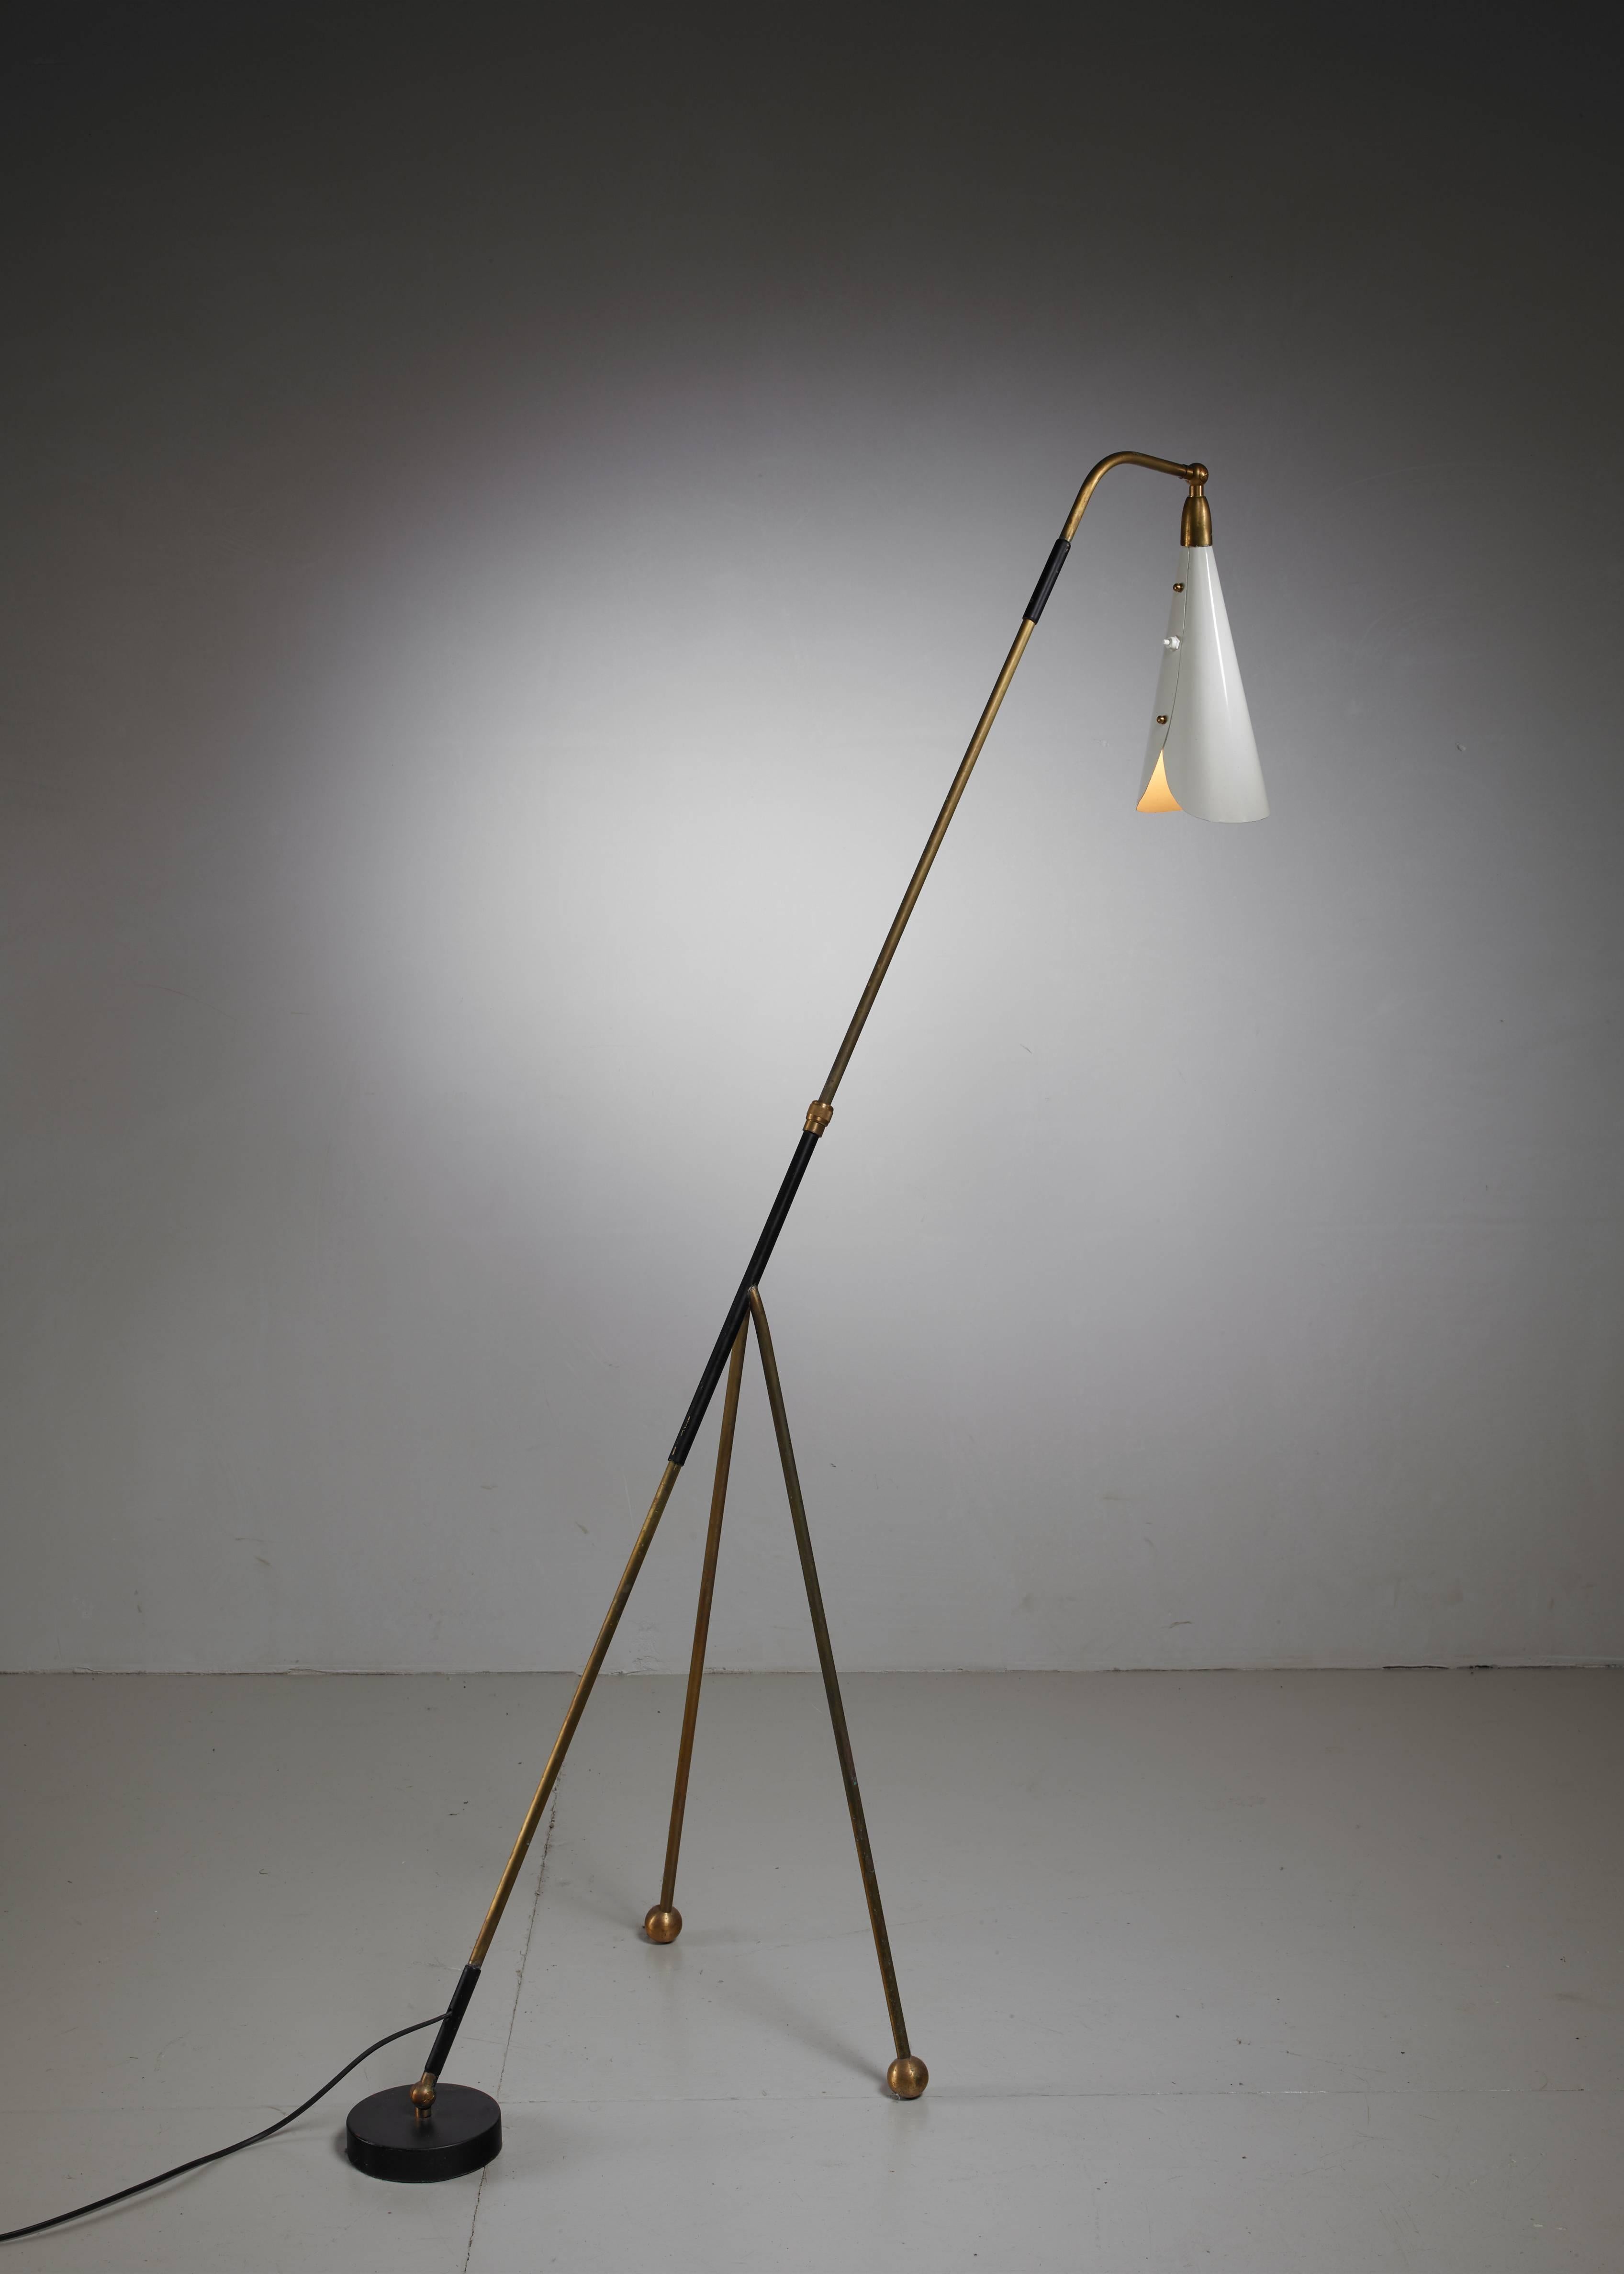 Mid-20th Century Italian Brass and Metal Floor Lamp, Arteluce Style, 1950s